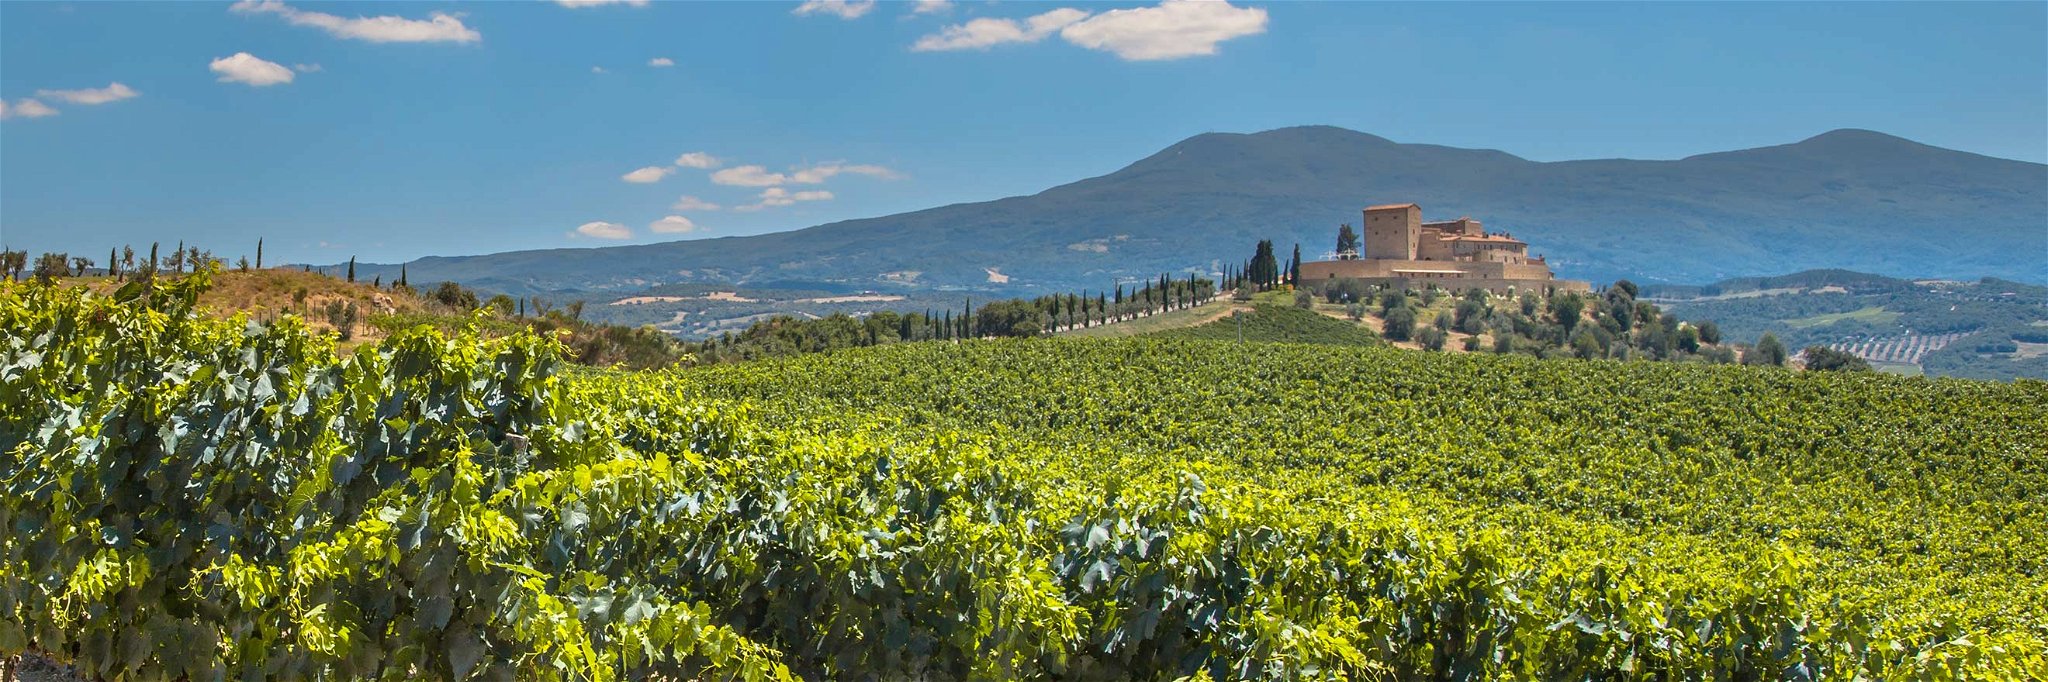 Das 200 Kilometer lange Teilstück der Rhône zwischen Vienne und Avignon ist für seine erlesenen Weine bekannt. 